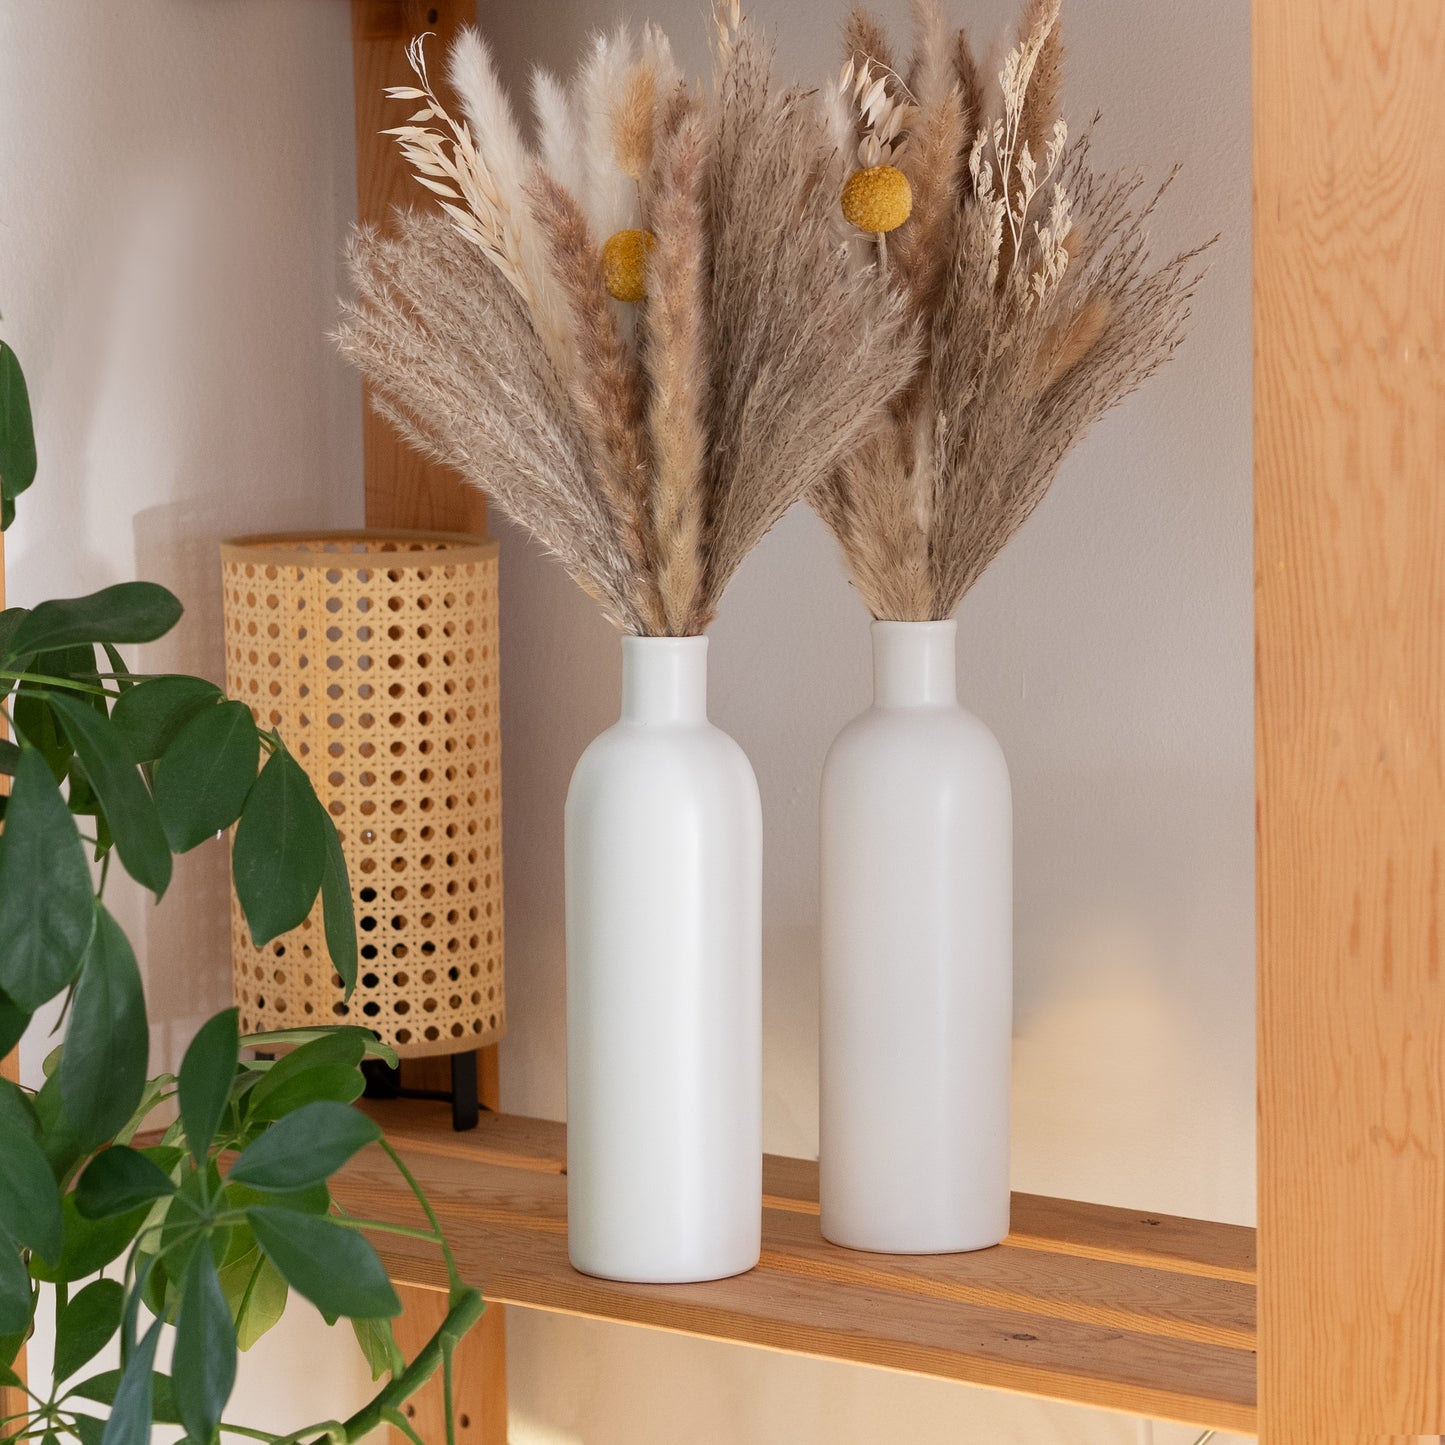 Soome Nattblom - Ceramic Vases Set + Dried Flowers